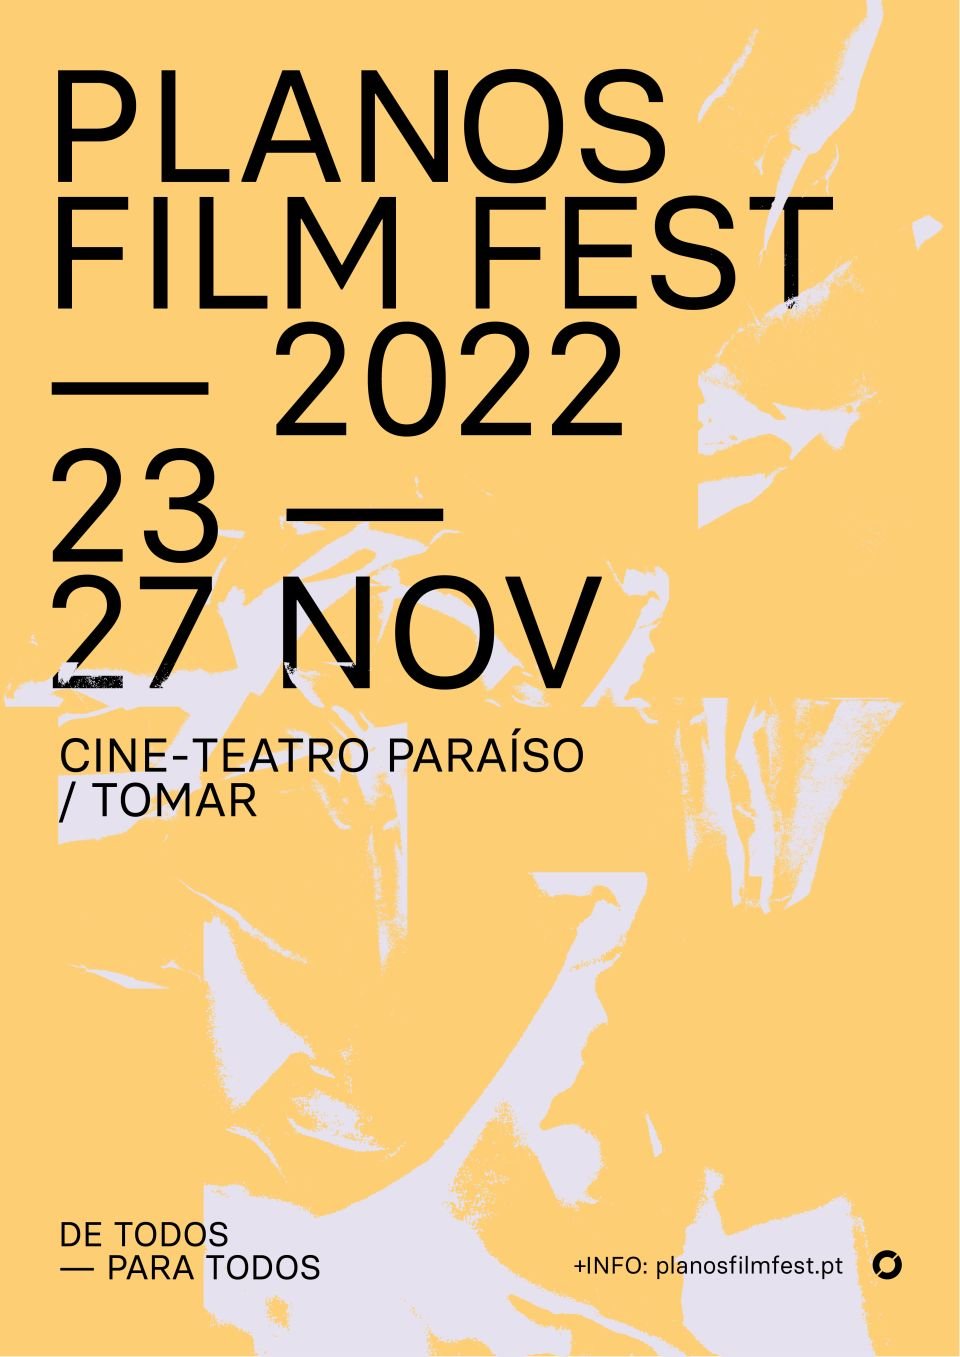 Planos Film Fest 2022